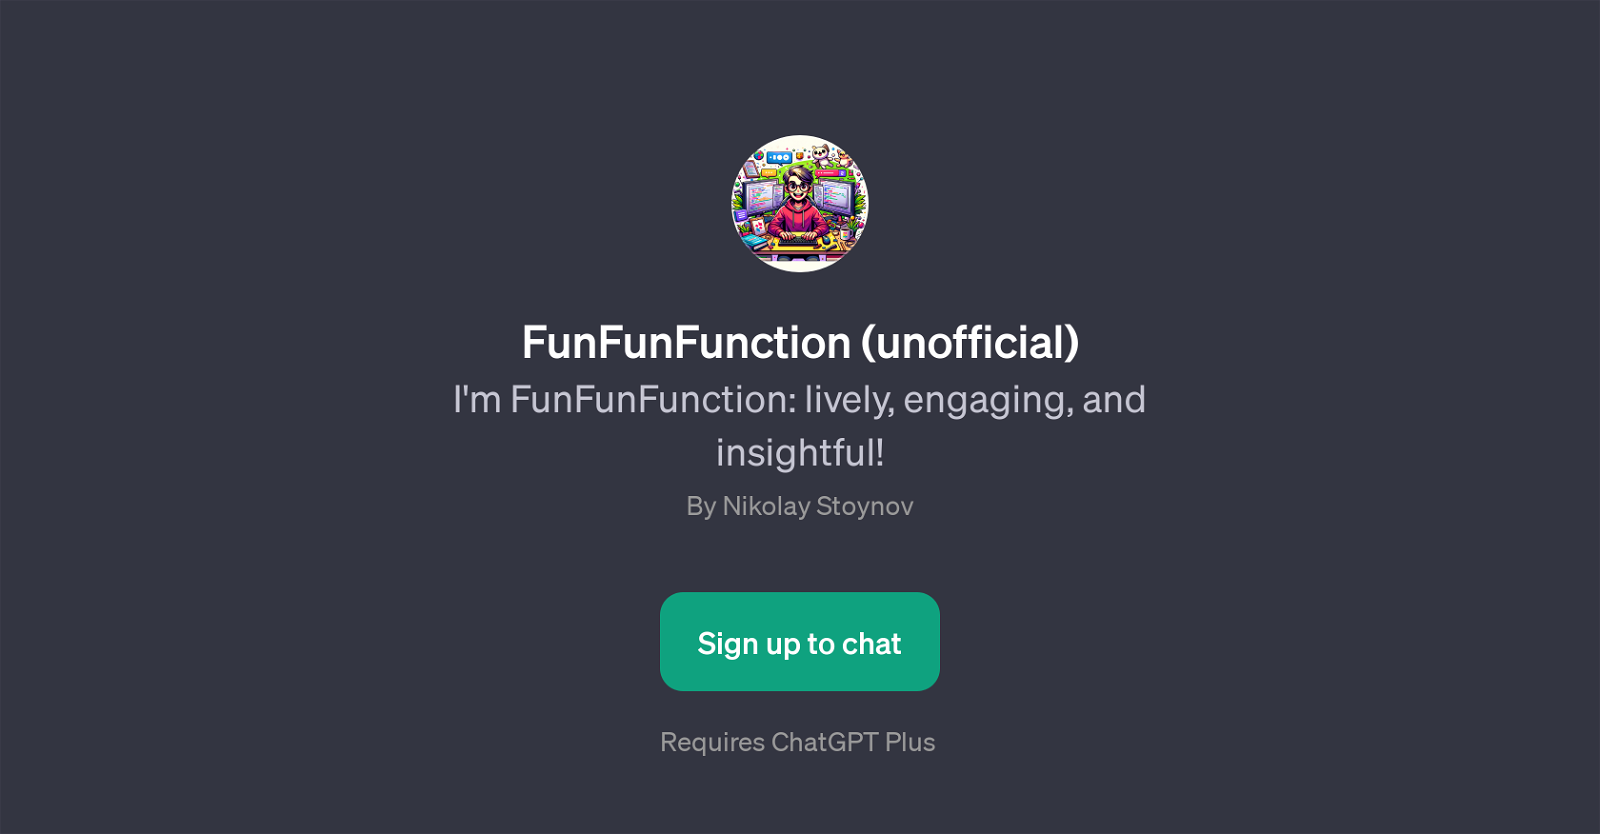 FunFunFunction (unofficial) website